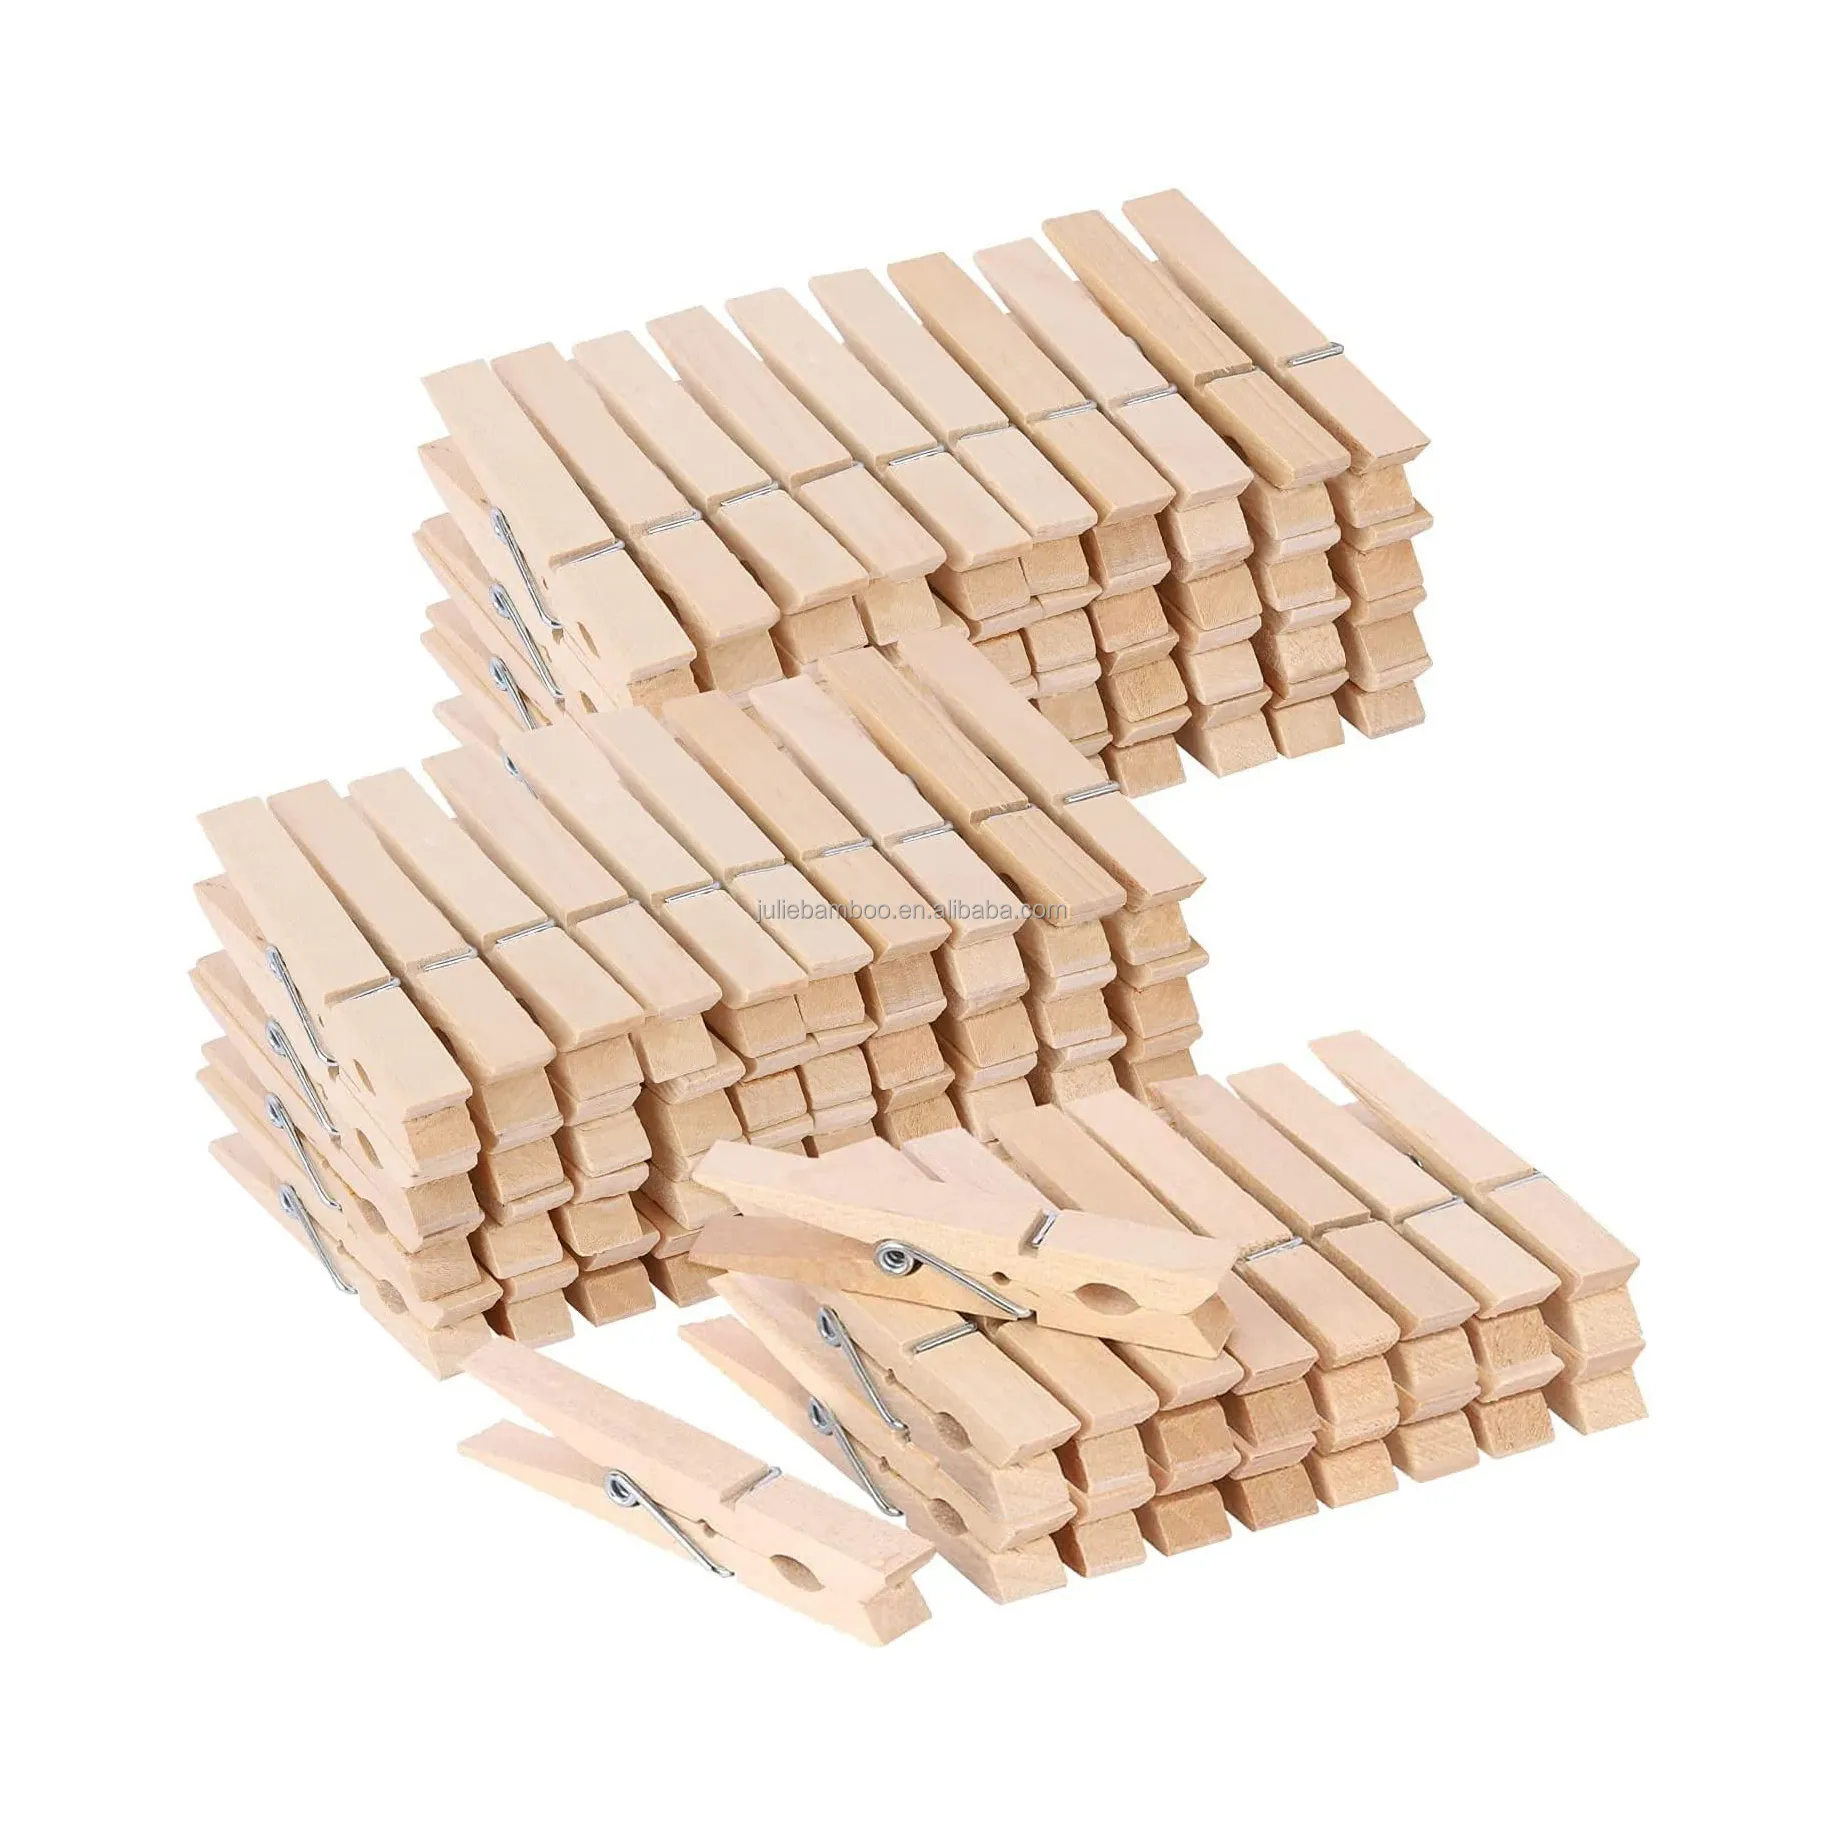 कारखाने-प्रत्यक्ष पर्यावरण के अनुकूल उच्च गुणवत्ता वाले प्राकृतिक लकड़ी के कपड़े 7.2 सेमी